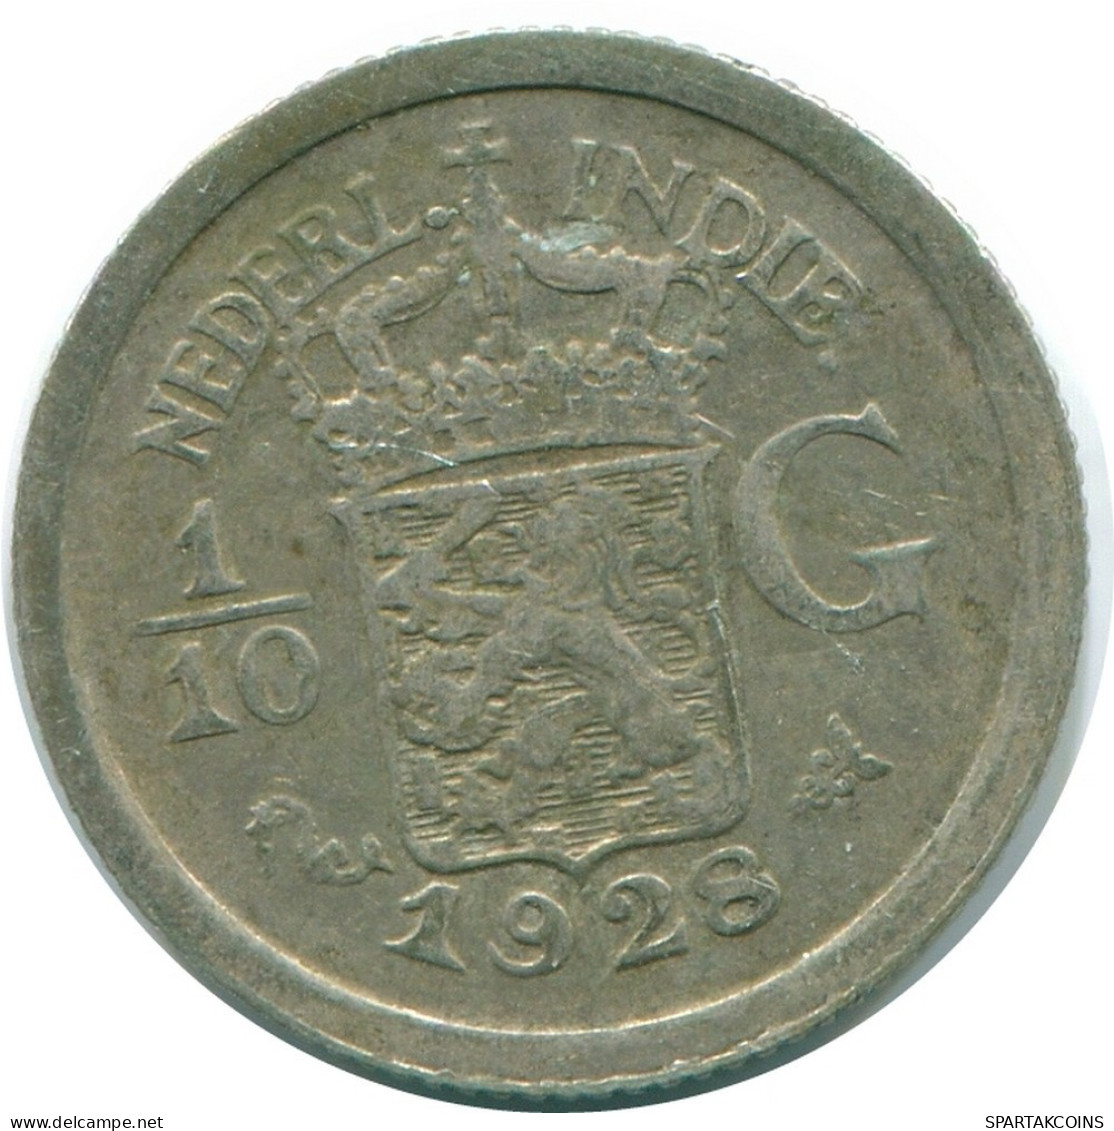 1/10 GULDEN 1928 NIEDERLANDE OSTINDIEN SILBER Koloniale Münze #NL13415.3.D.A - Nederlands-Indië